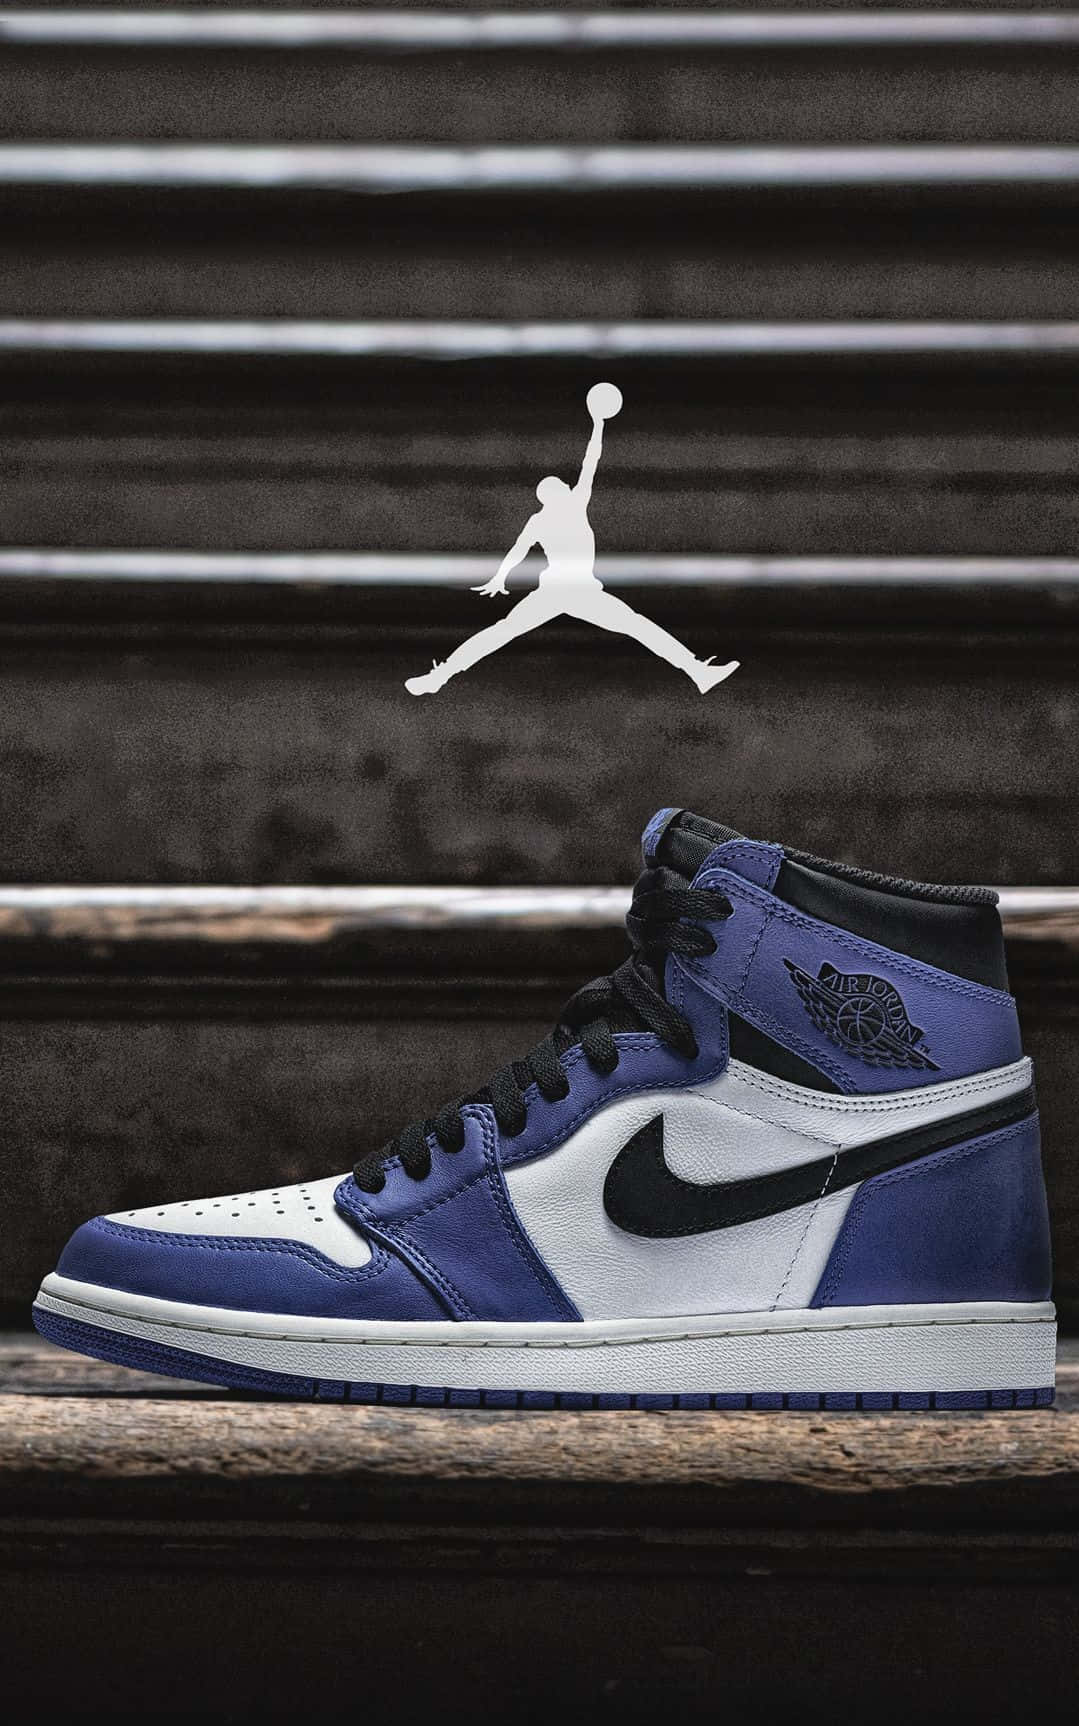 Einbild Im Klassischen Stil - Nike Air Jordan Wallpaper